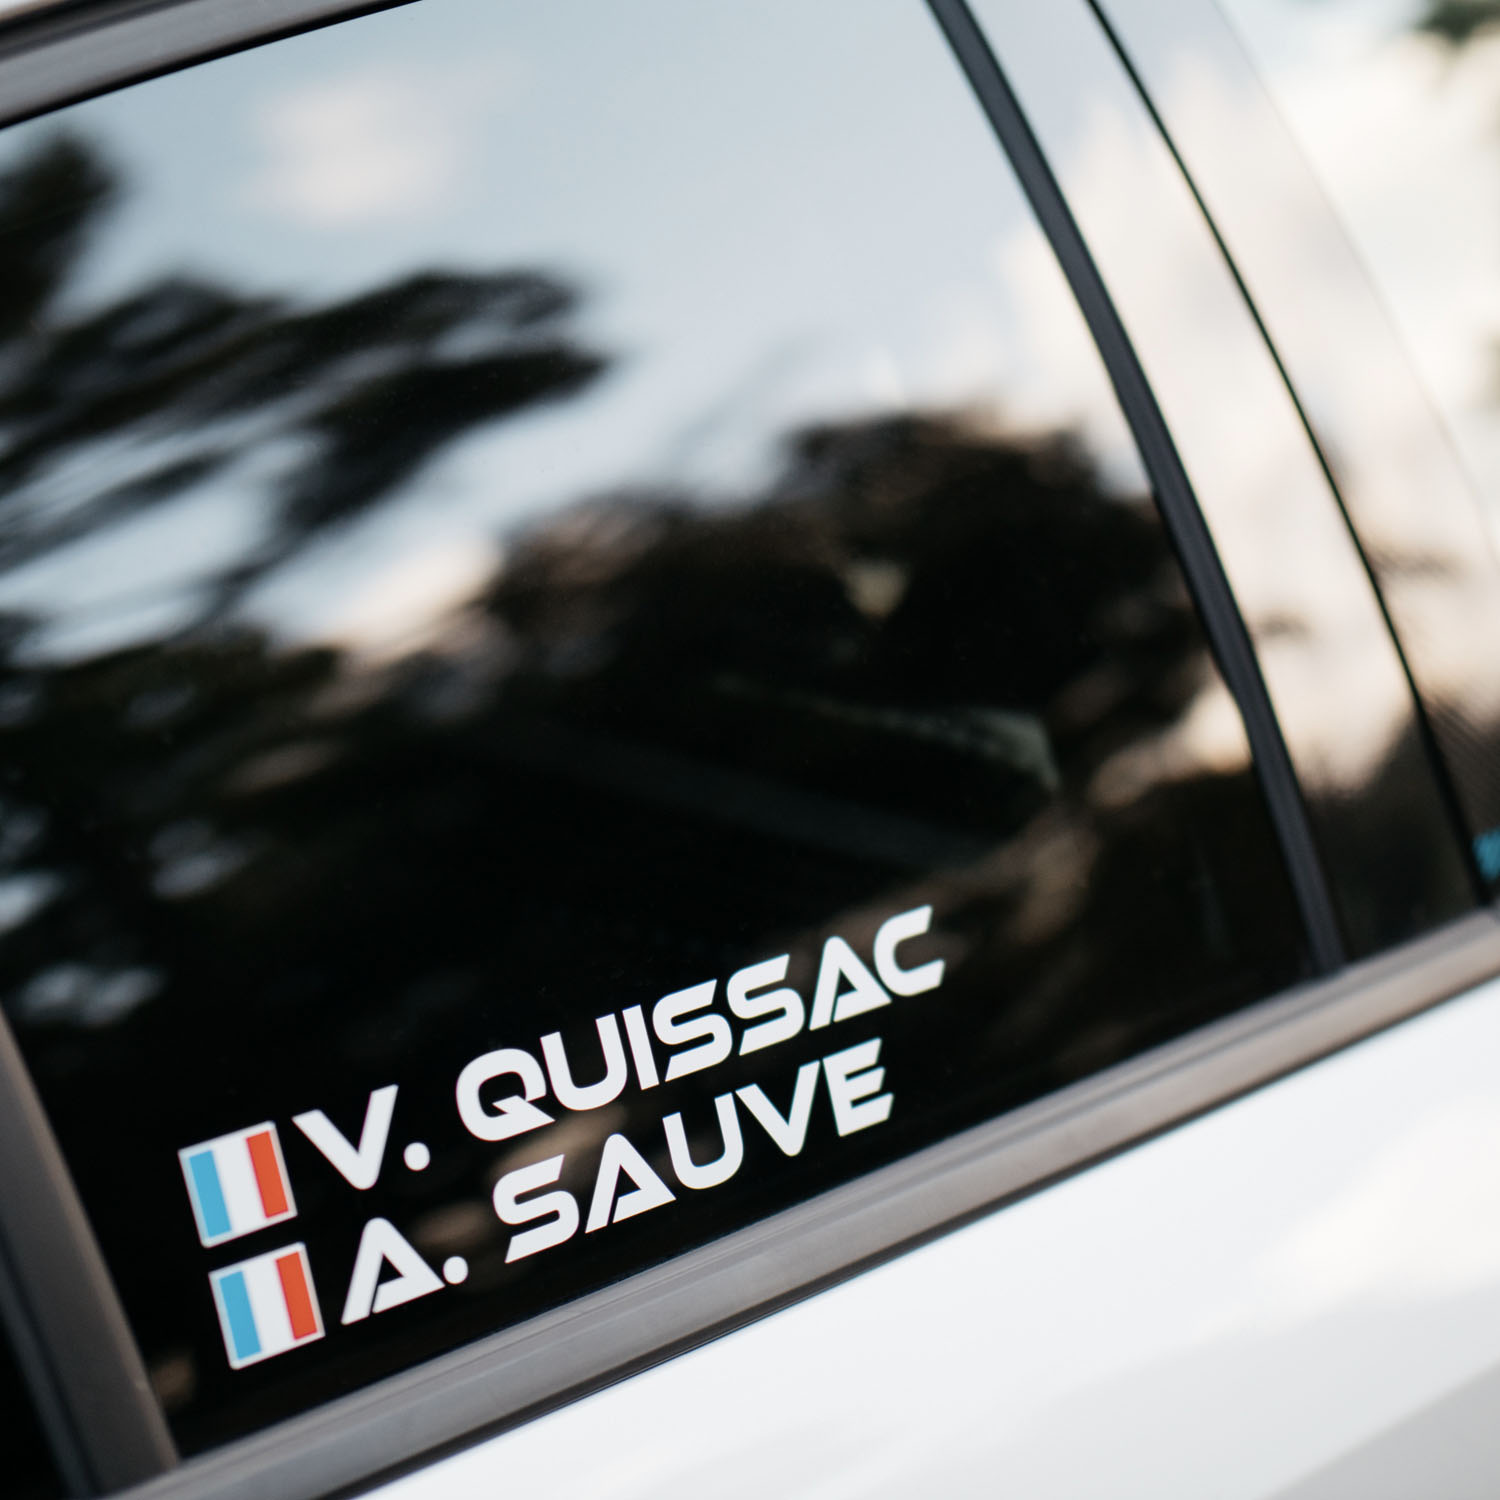 Retrouvez les garages Vergnon Auto à Quissac et à Sauve, dans le département du Gard.